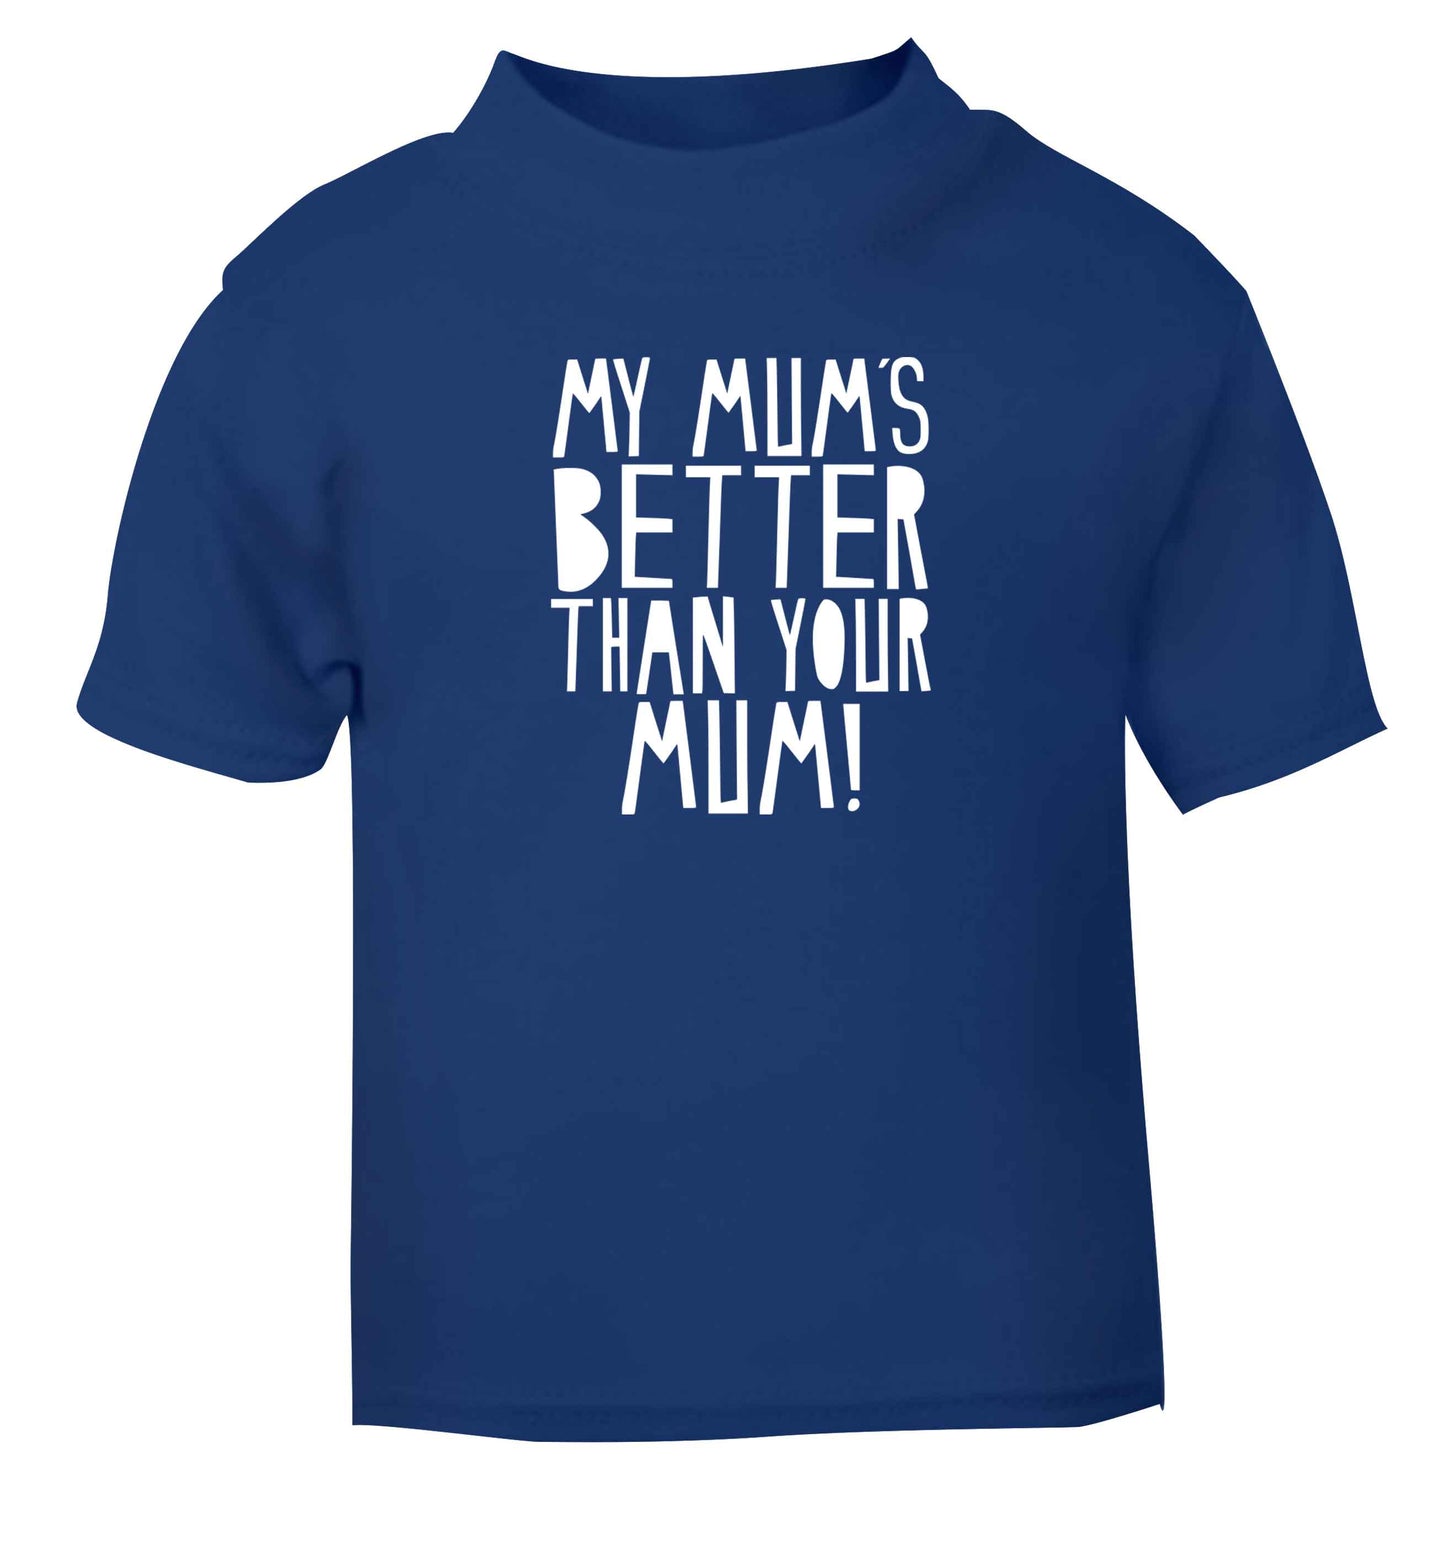 My mum's better than your mum blue baby toddler Tshirt 2 Years